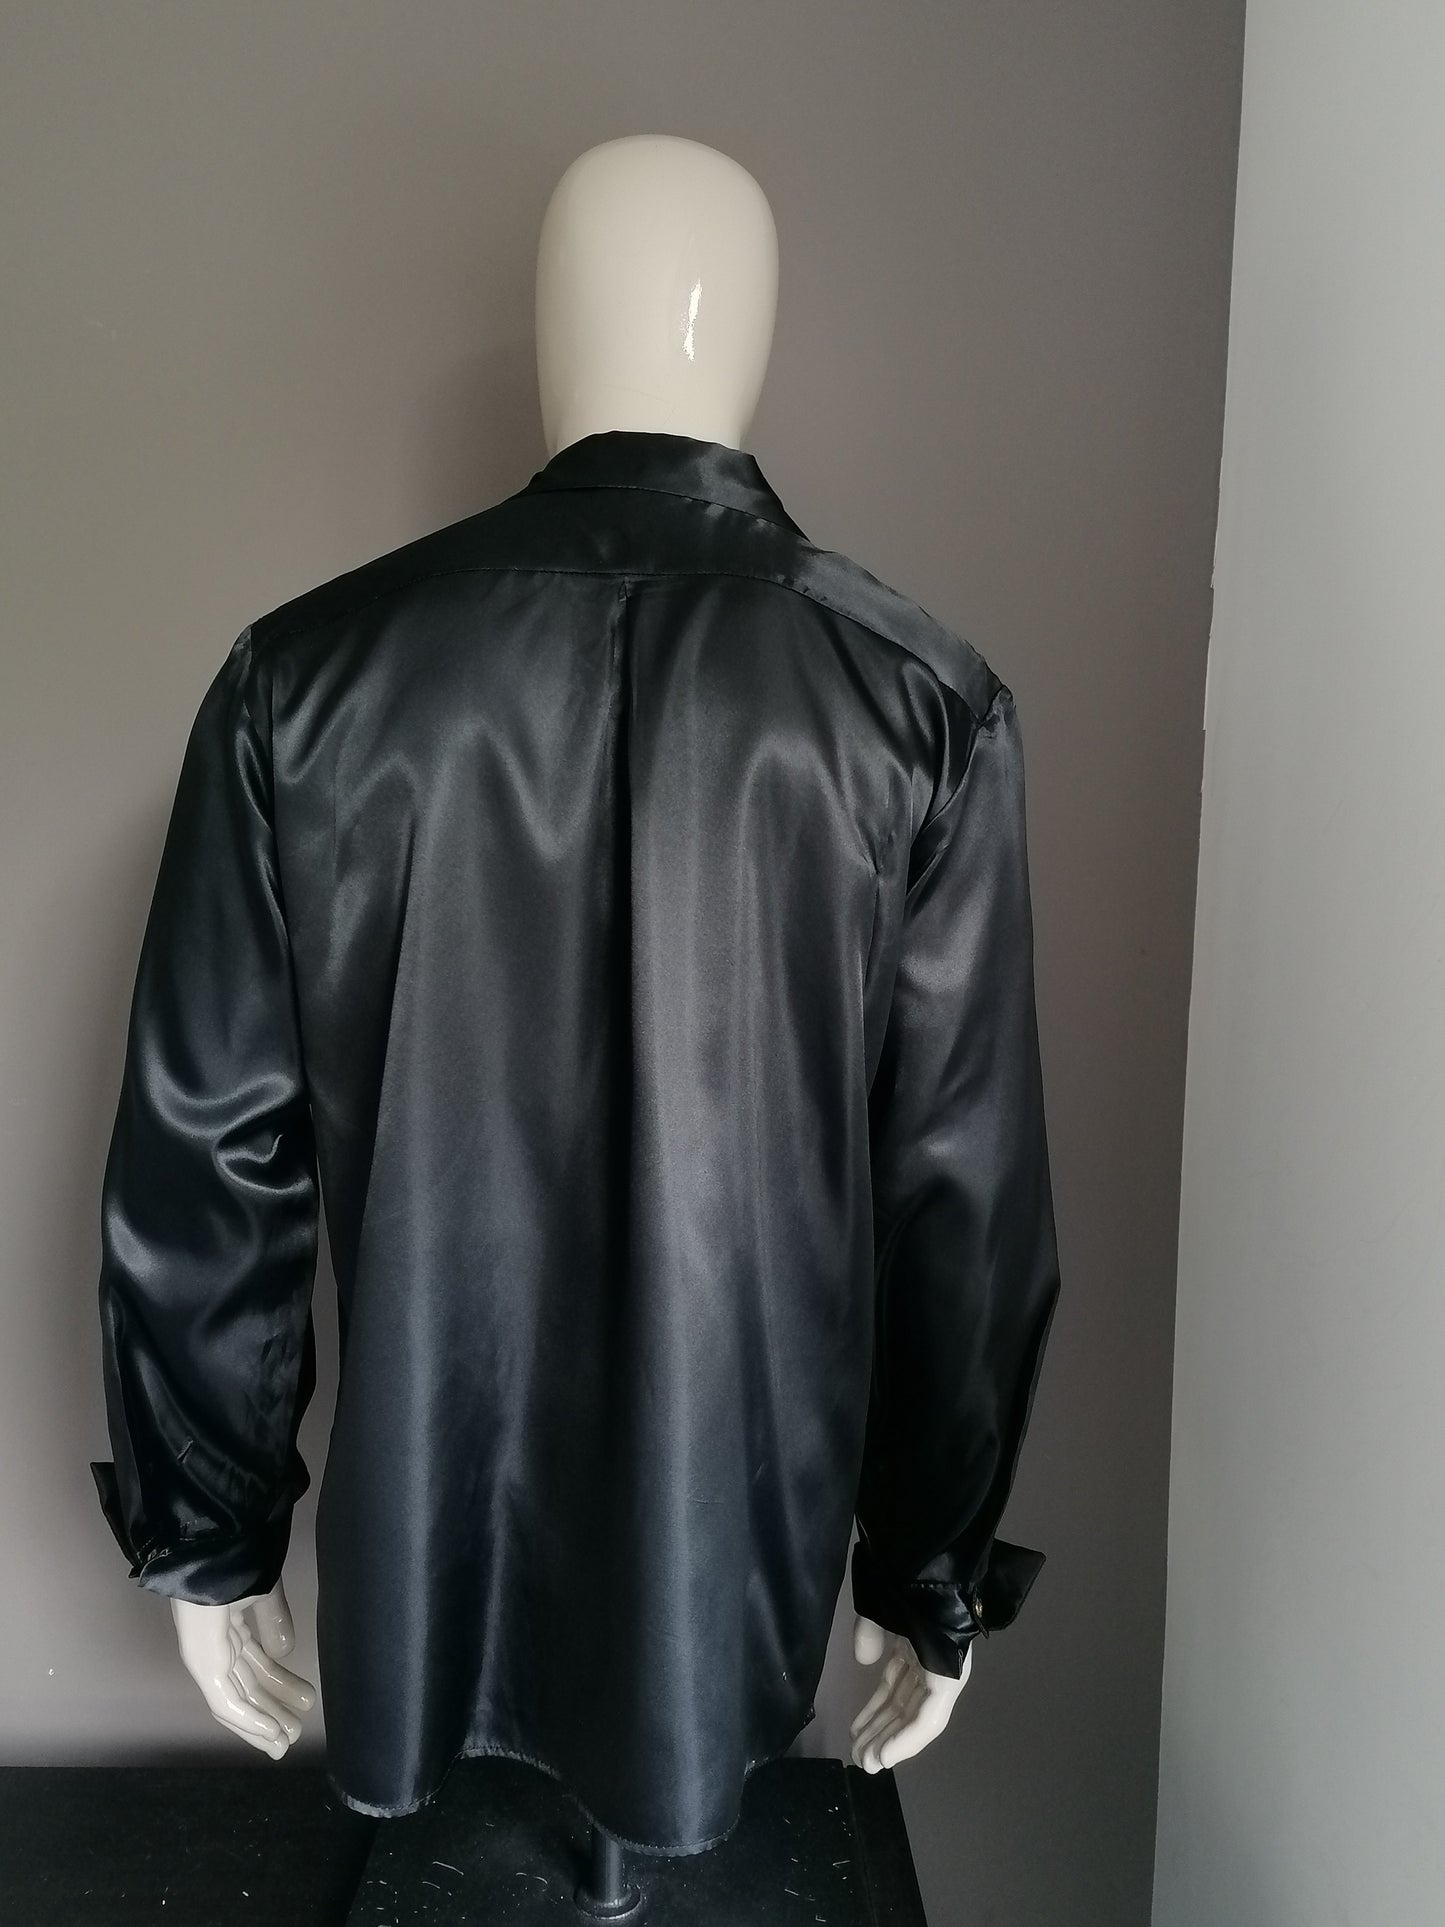 Camisa vintage de los 70 con volantes y cuello puntiagudo. Black Glossy. Tamaño xl.